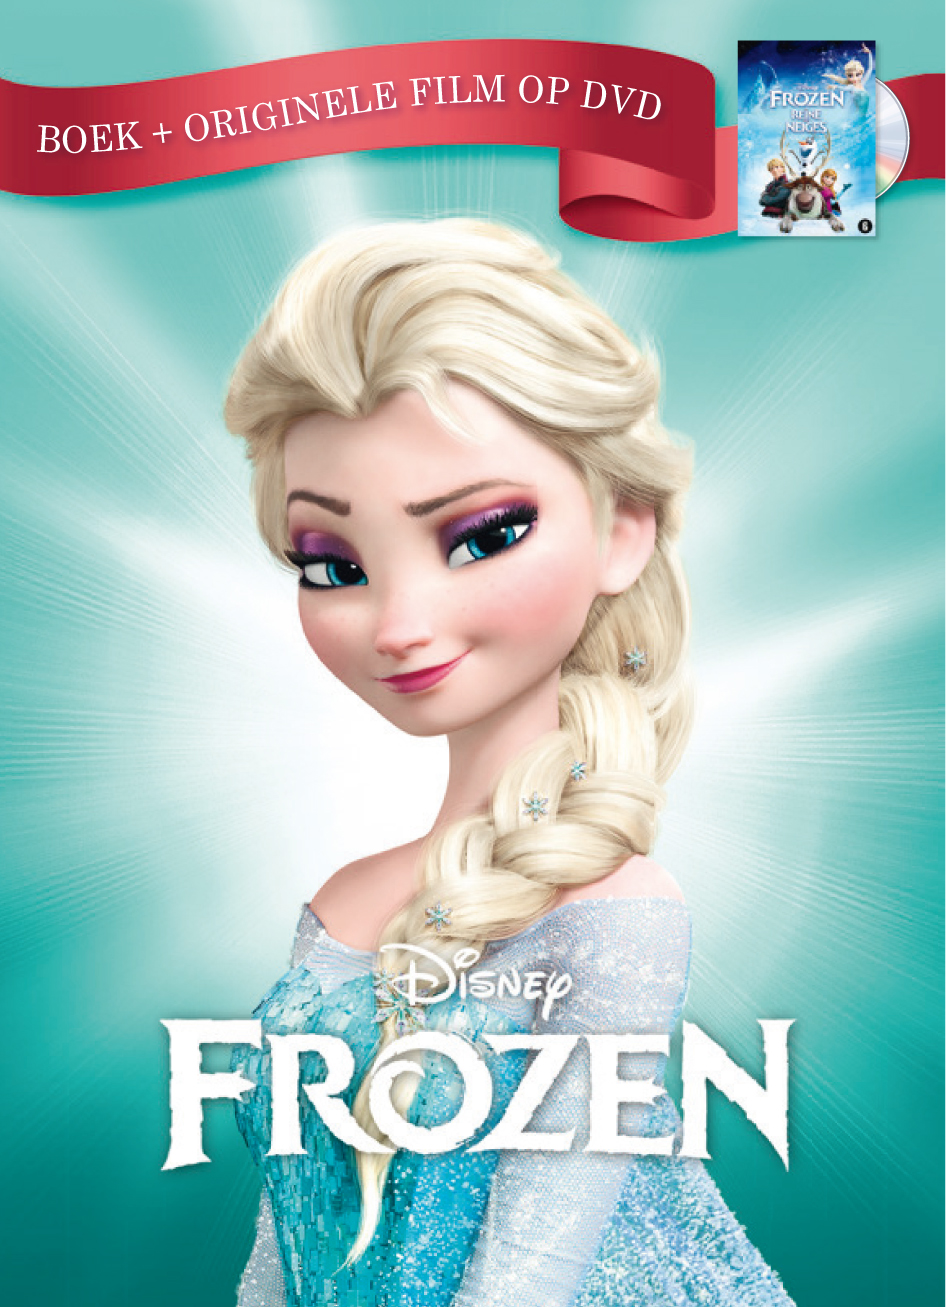 Afgekeurd ergens spoor Uitgeverij Rubinstein | Disney Frozen boek + originele film op DVD